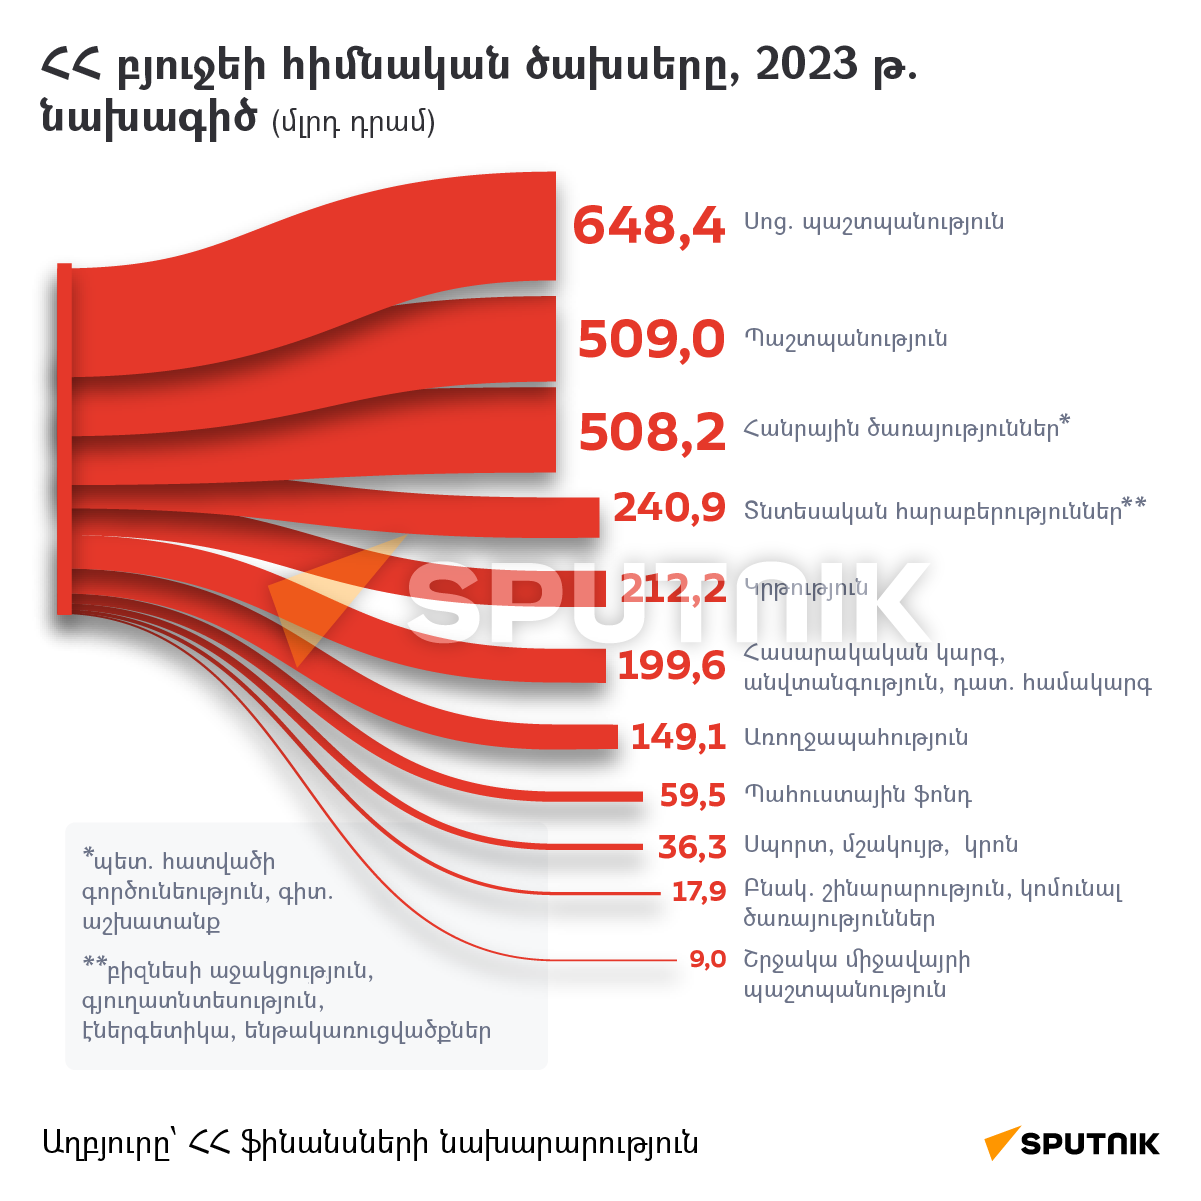 ՀՀ բյուջեի հիմնական ծախսերը, 2023 թ. նախագիծ - Sputnik Արմենիա